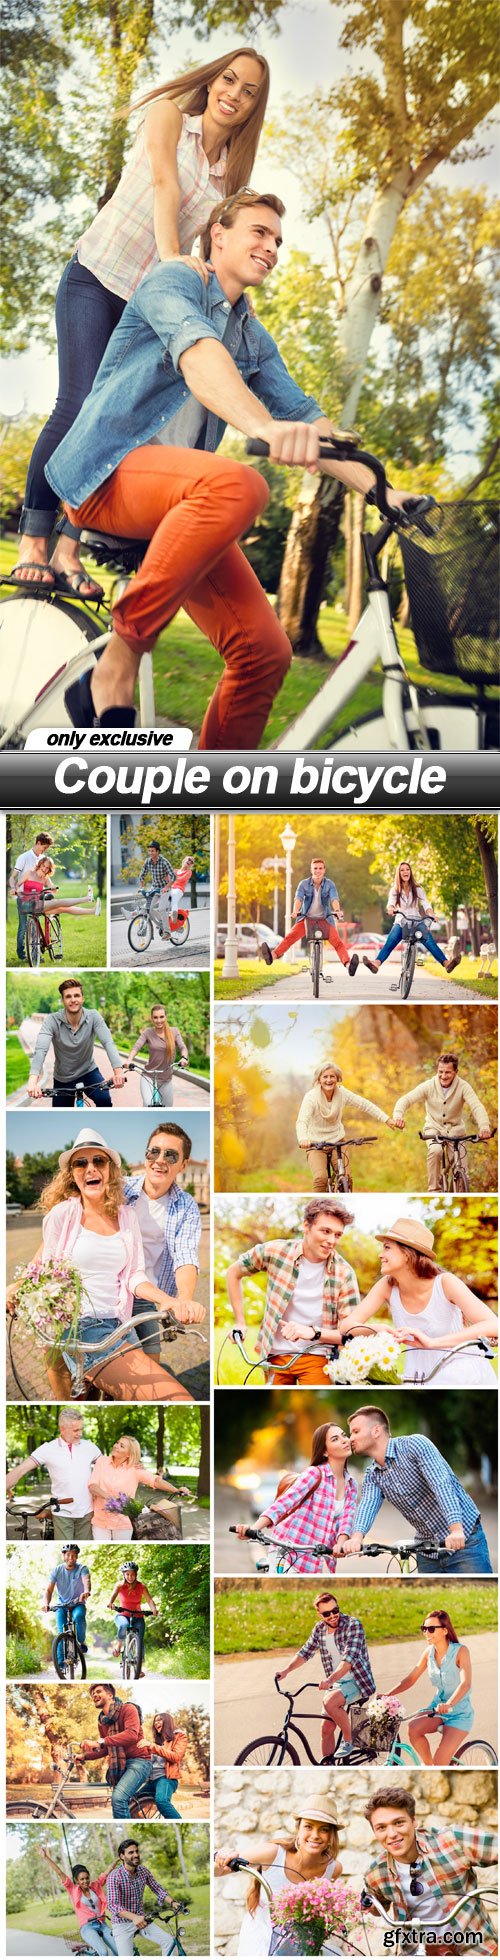 Couple on bicycle - 15 UHQ JPEG